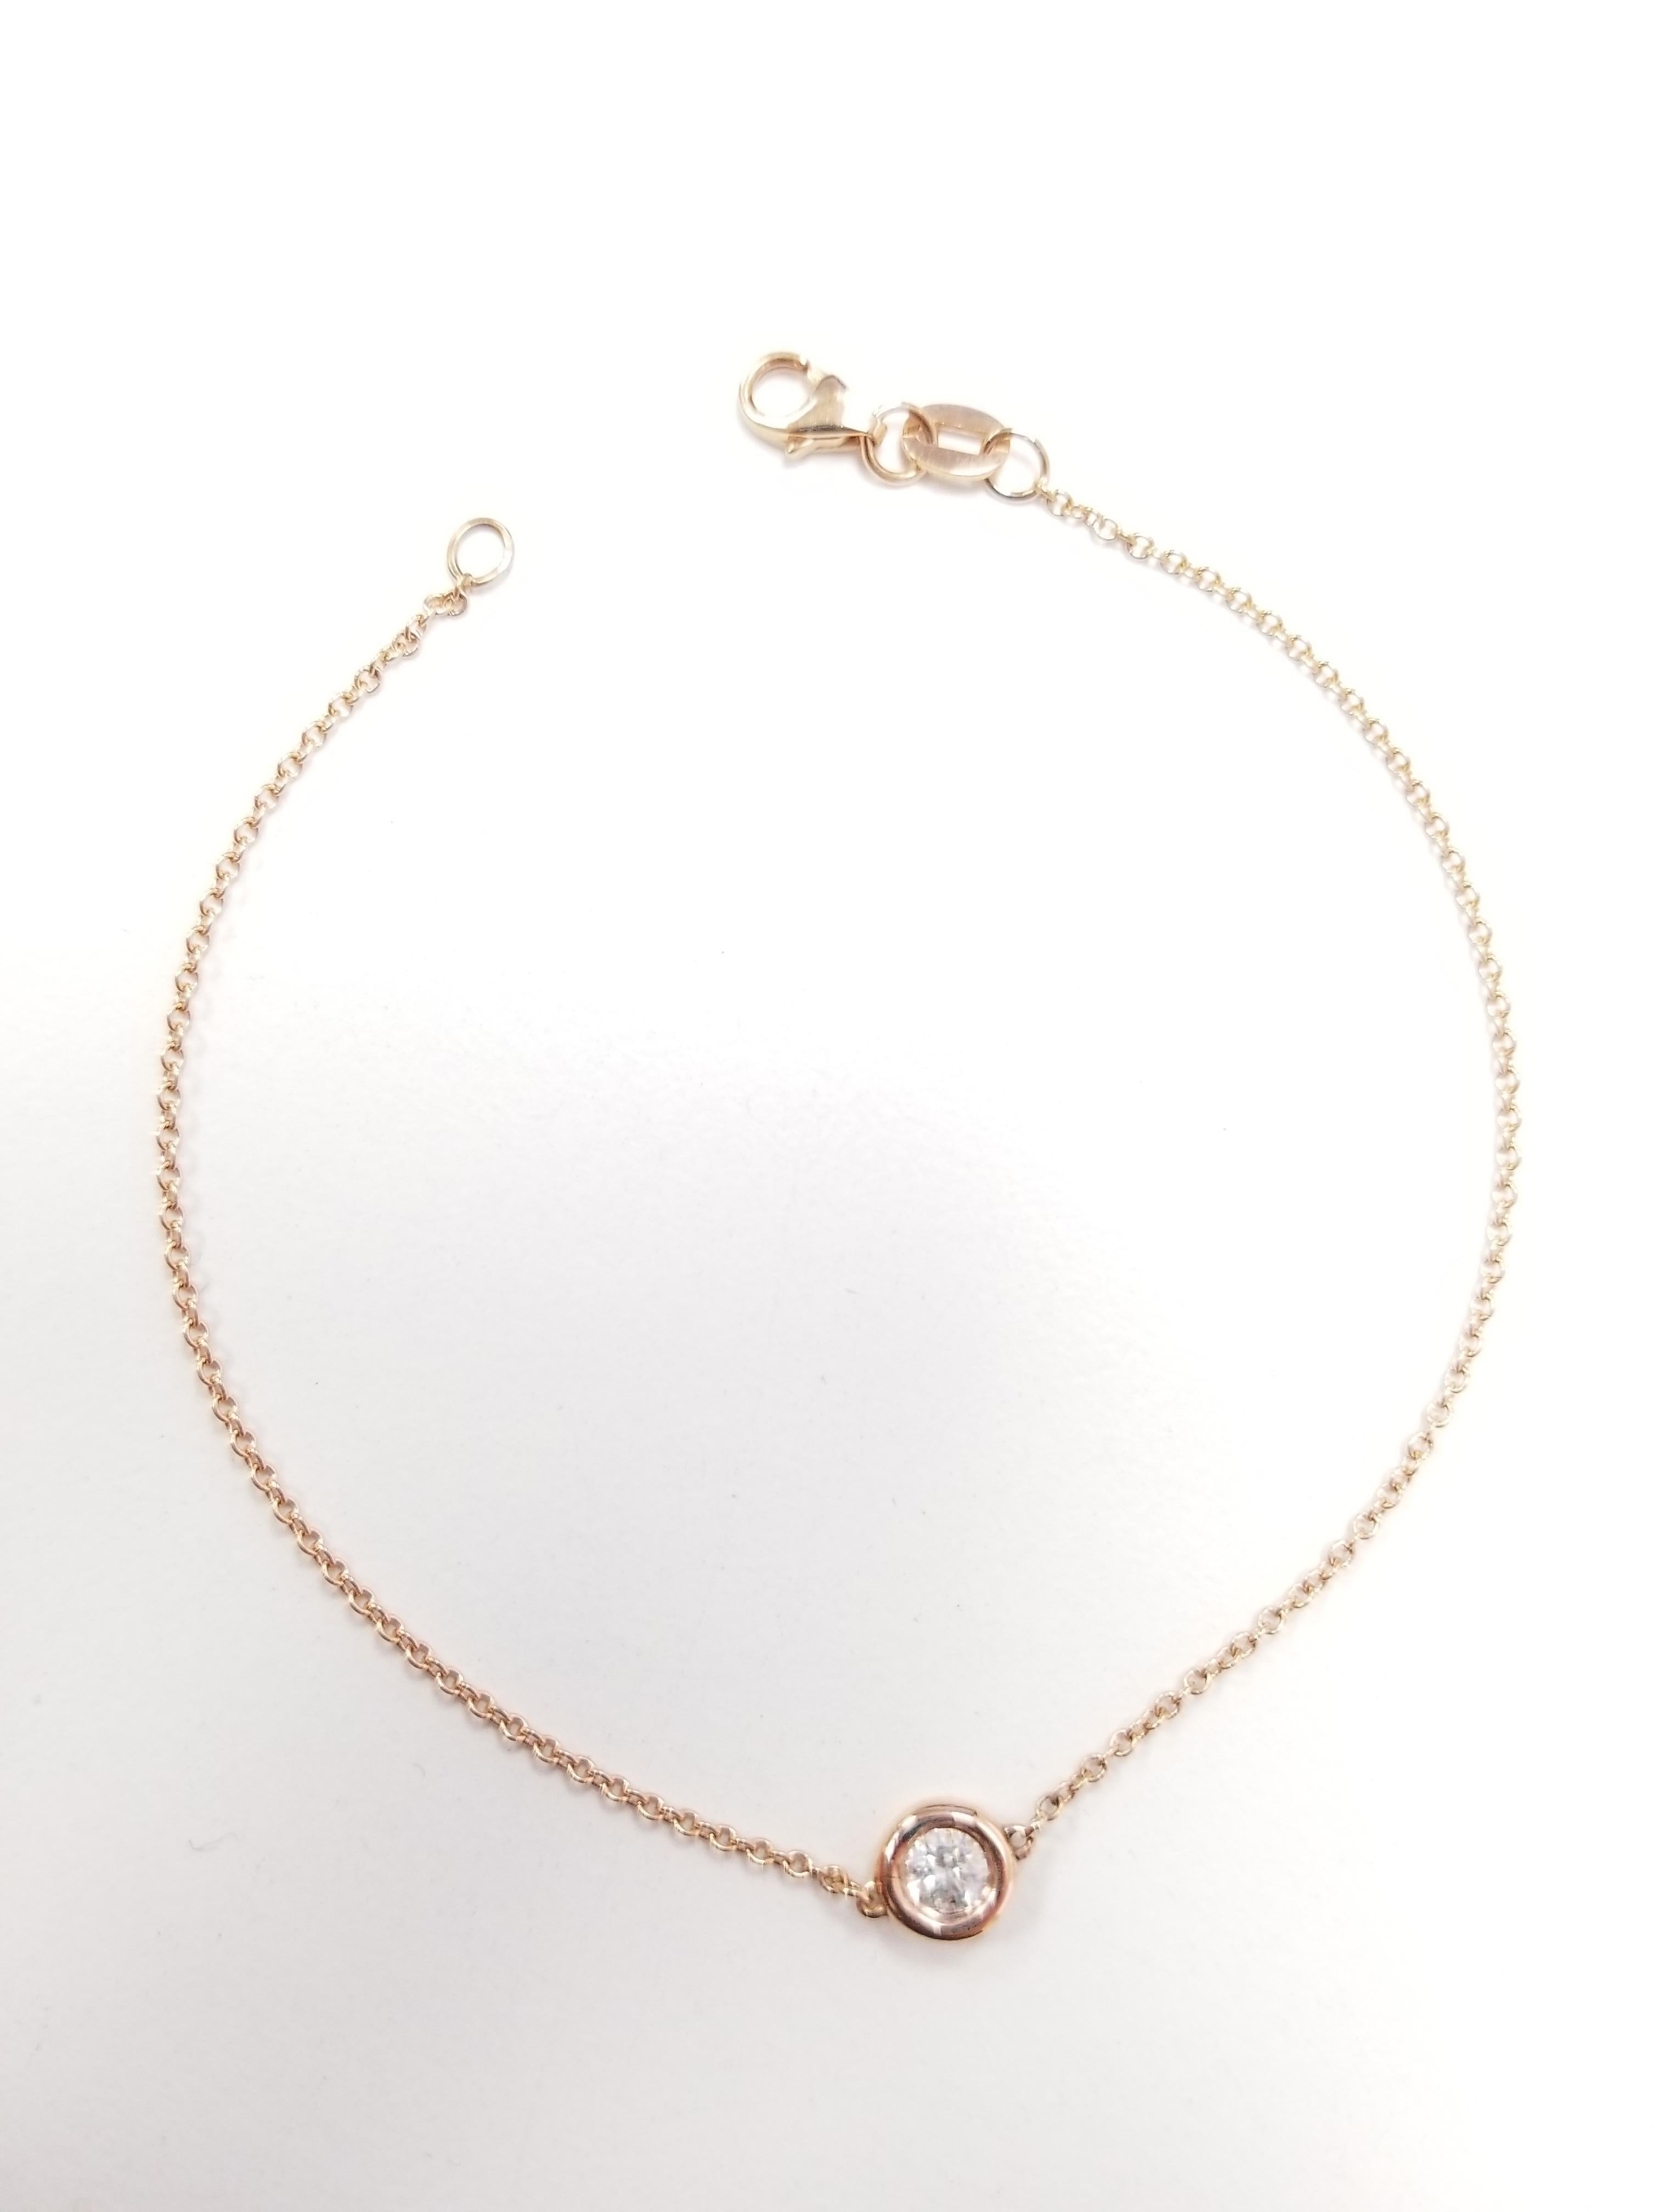 Un bracelet étonnant et classique parfait pour une utilisation quotidienne, combiné ou simplement tout seul. Le diamant blanc 0,42 carat est serti dans une lunette en 14 carats et attaché à une chaîne délicate avec un fermoir de 17,78 cm.  Le